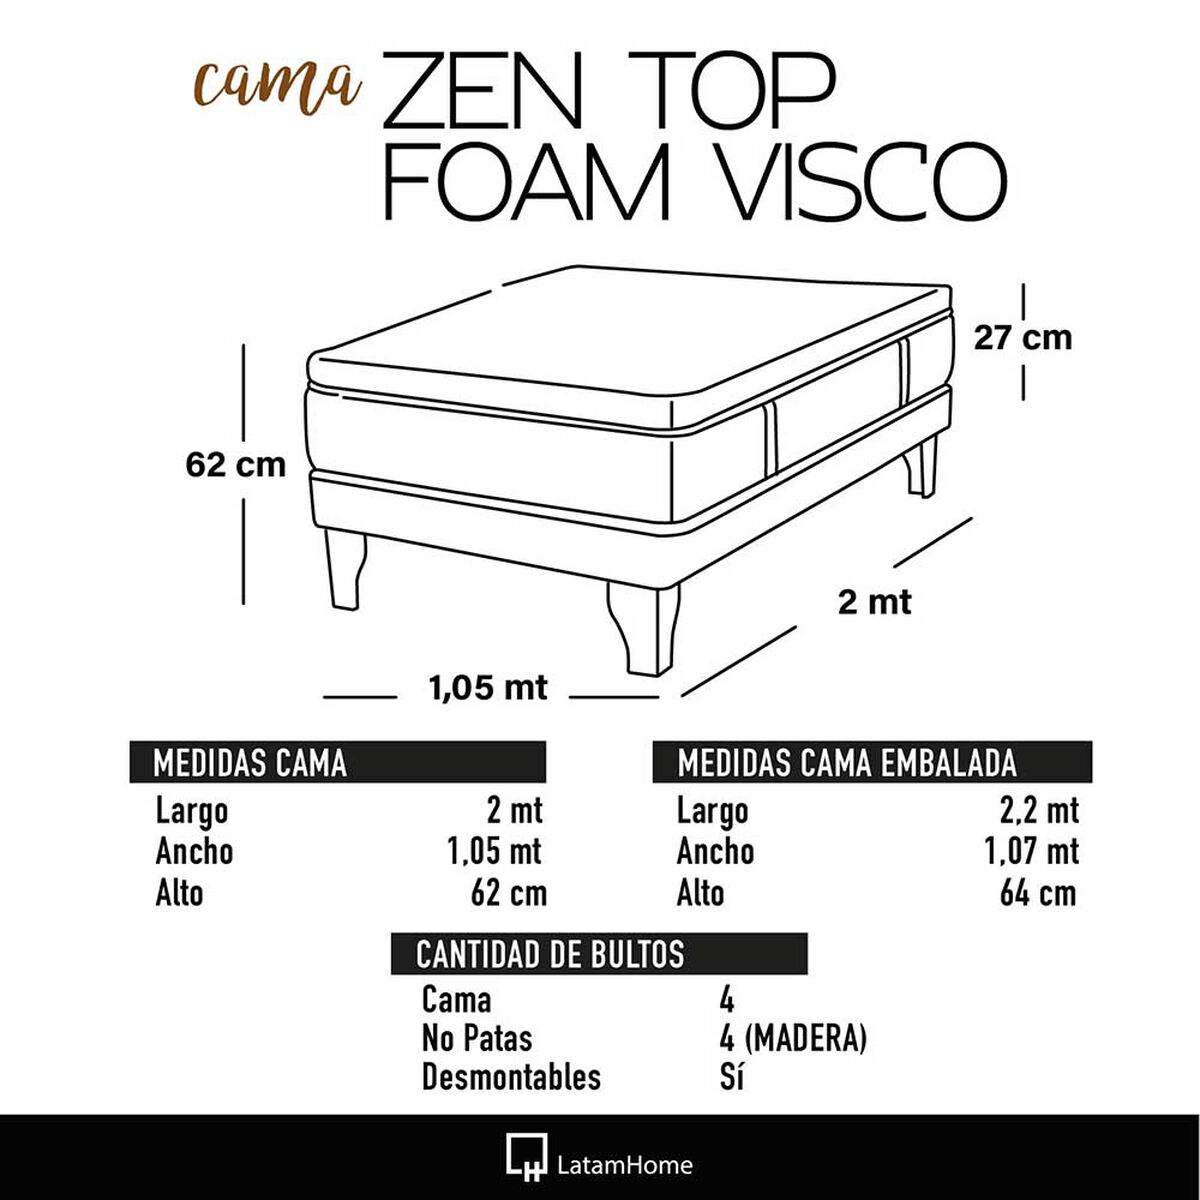 Cama Europea Latam Home 1,5 Plazas Zen Top Foam Visco Velvet Burdeo